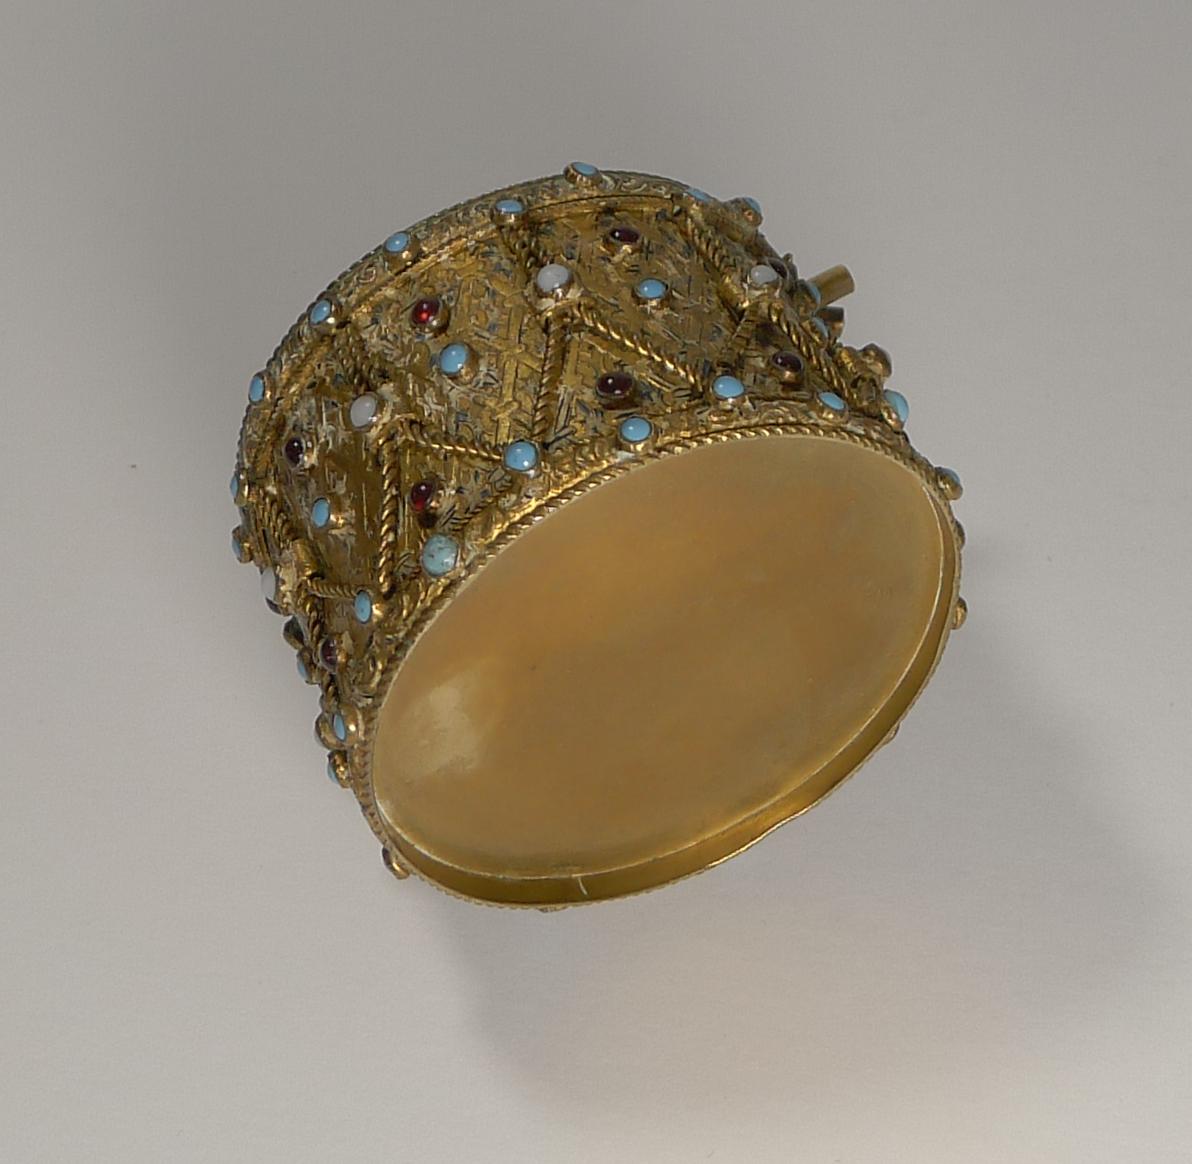 Eine höchst ungewöhnliche Schatulle aus dem späten 19. Jahrhundert in Form einer Trommel aus vergoldetem Messing mit einer Auswahl an unechten Cabochon-Türkisen, Opalen und Granaten.

Die Griffe der beiden Trommelstöcke werden über den Rand der